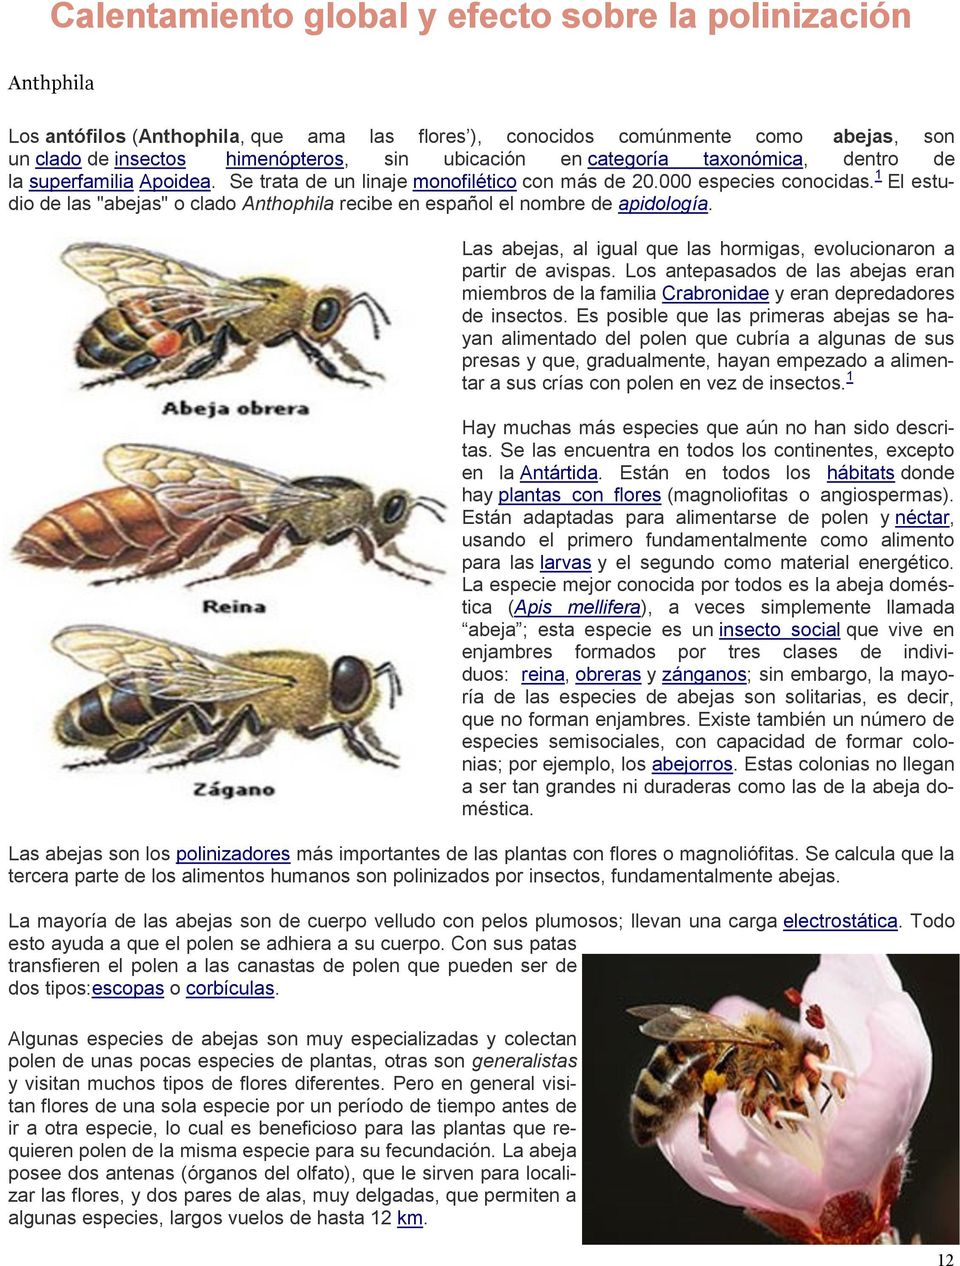 1 El estudio de las "abejas" o clado Anthophila recibe en español el nombre de apidología. Las abejas, al igual que las hormigas, evolucionaron a partir de avispas.